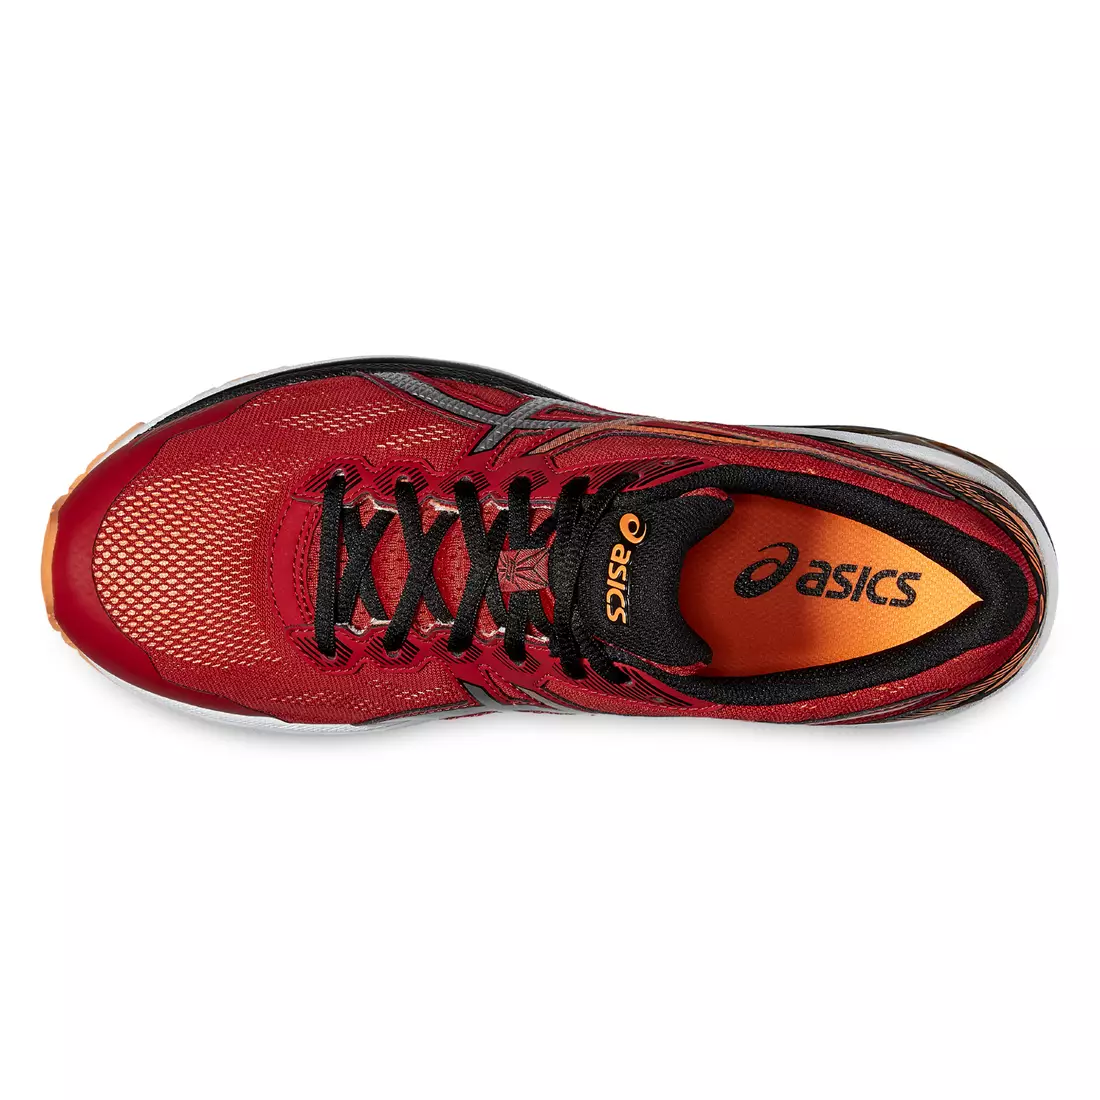 ASICS GT-1000 5 men's running shoes T6A3N 2393